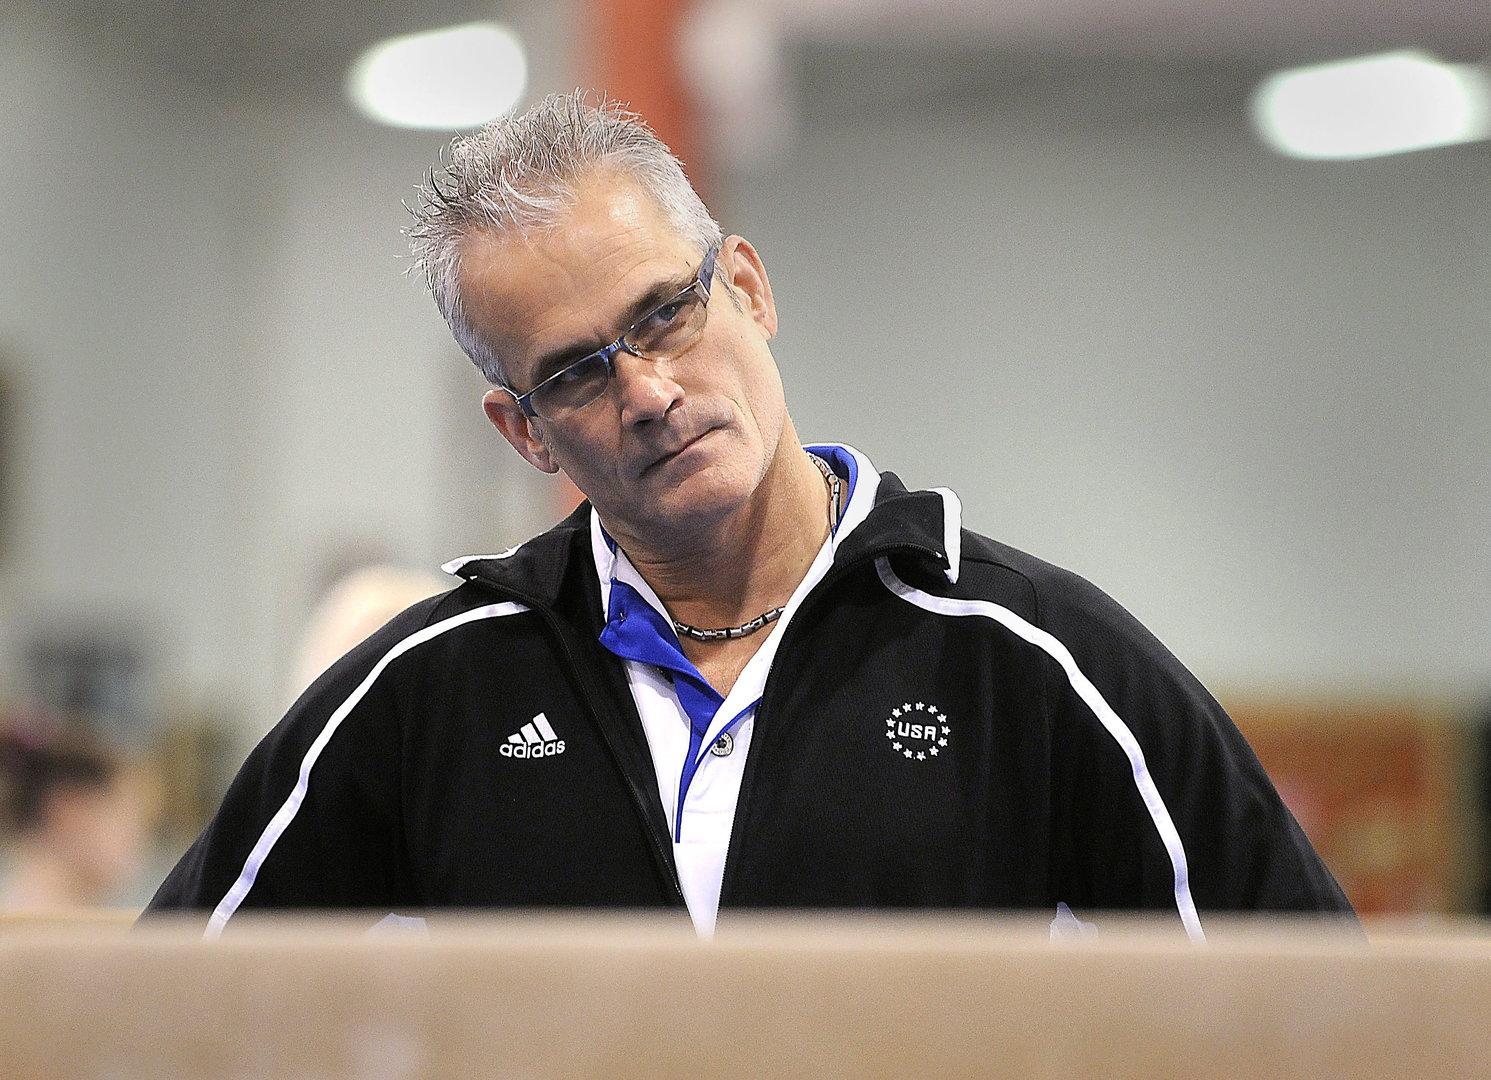 Wegen sexuellen Missbrauchs beschuldigter Ex-US-Coach Geddert ist tot